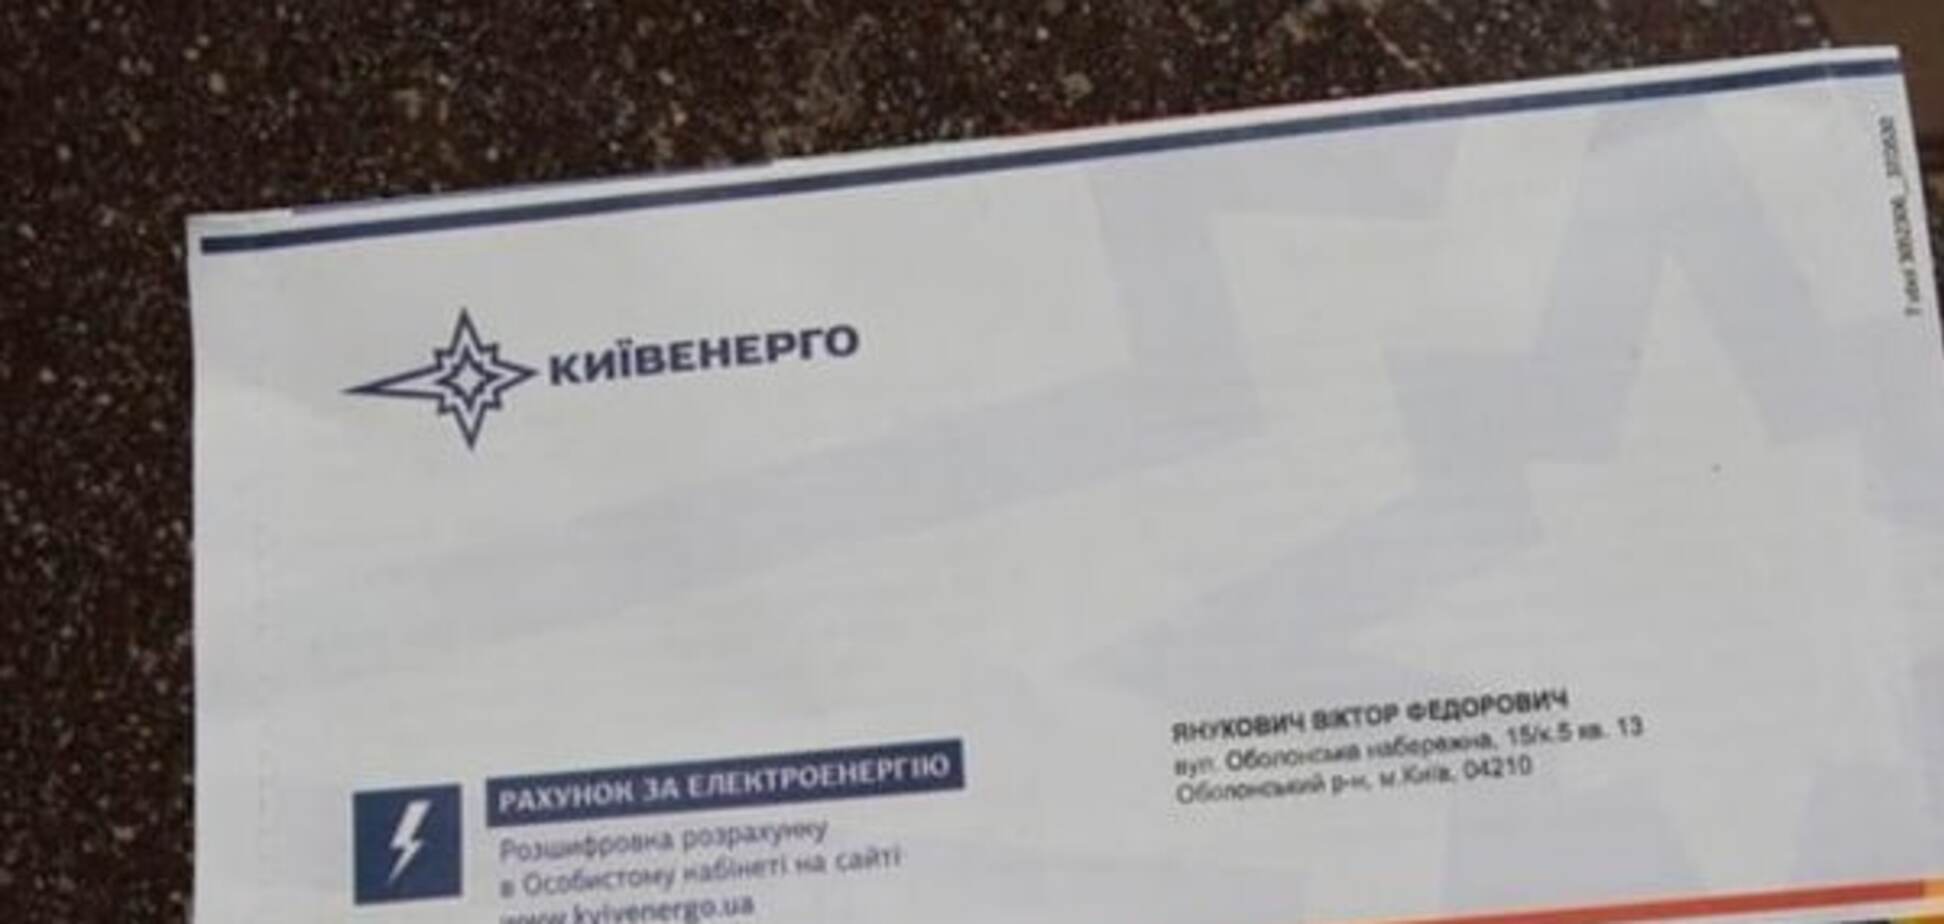 Платежка на имя Януковича